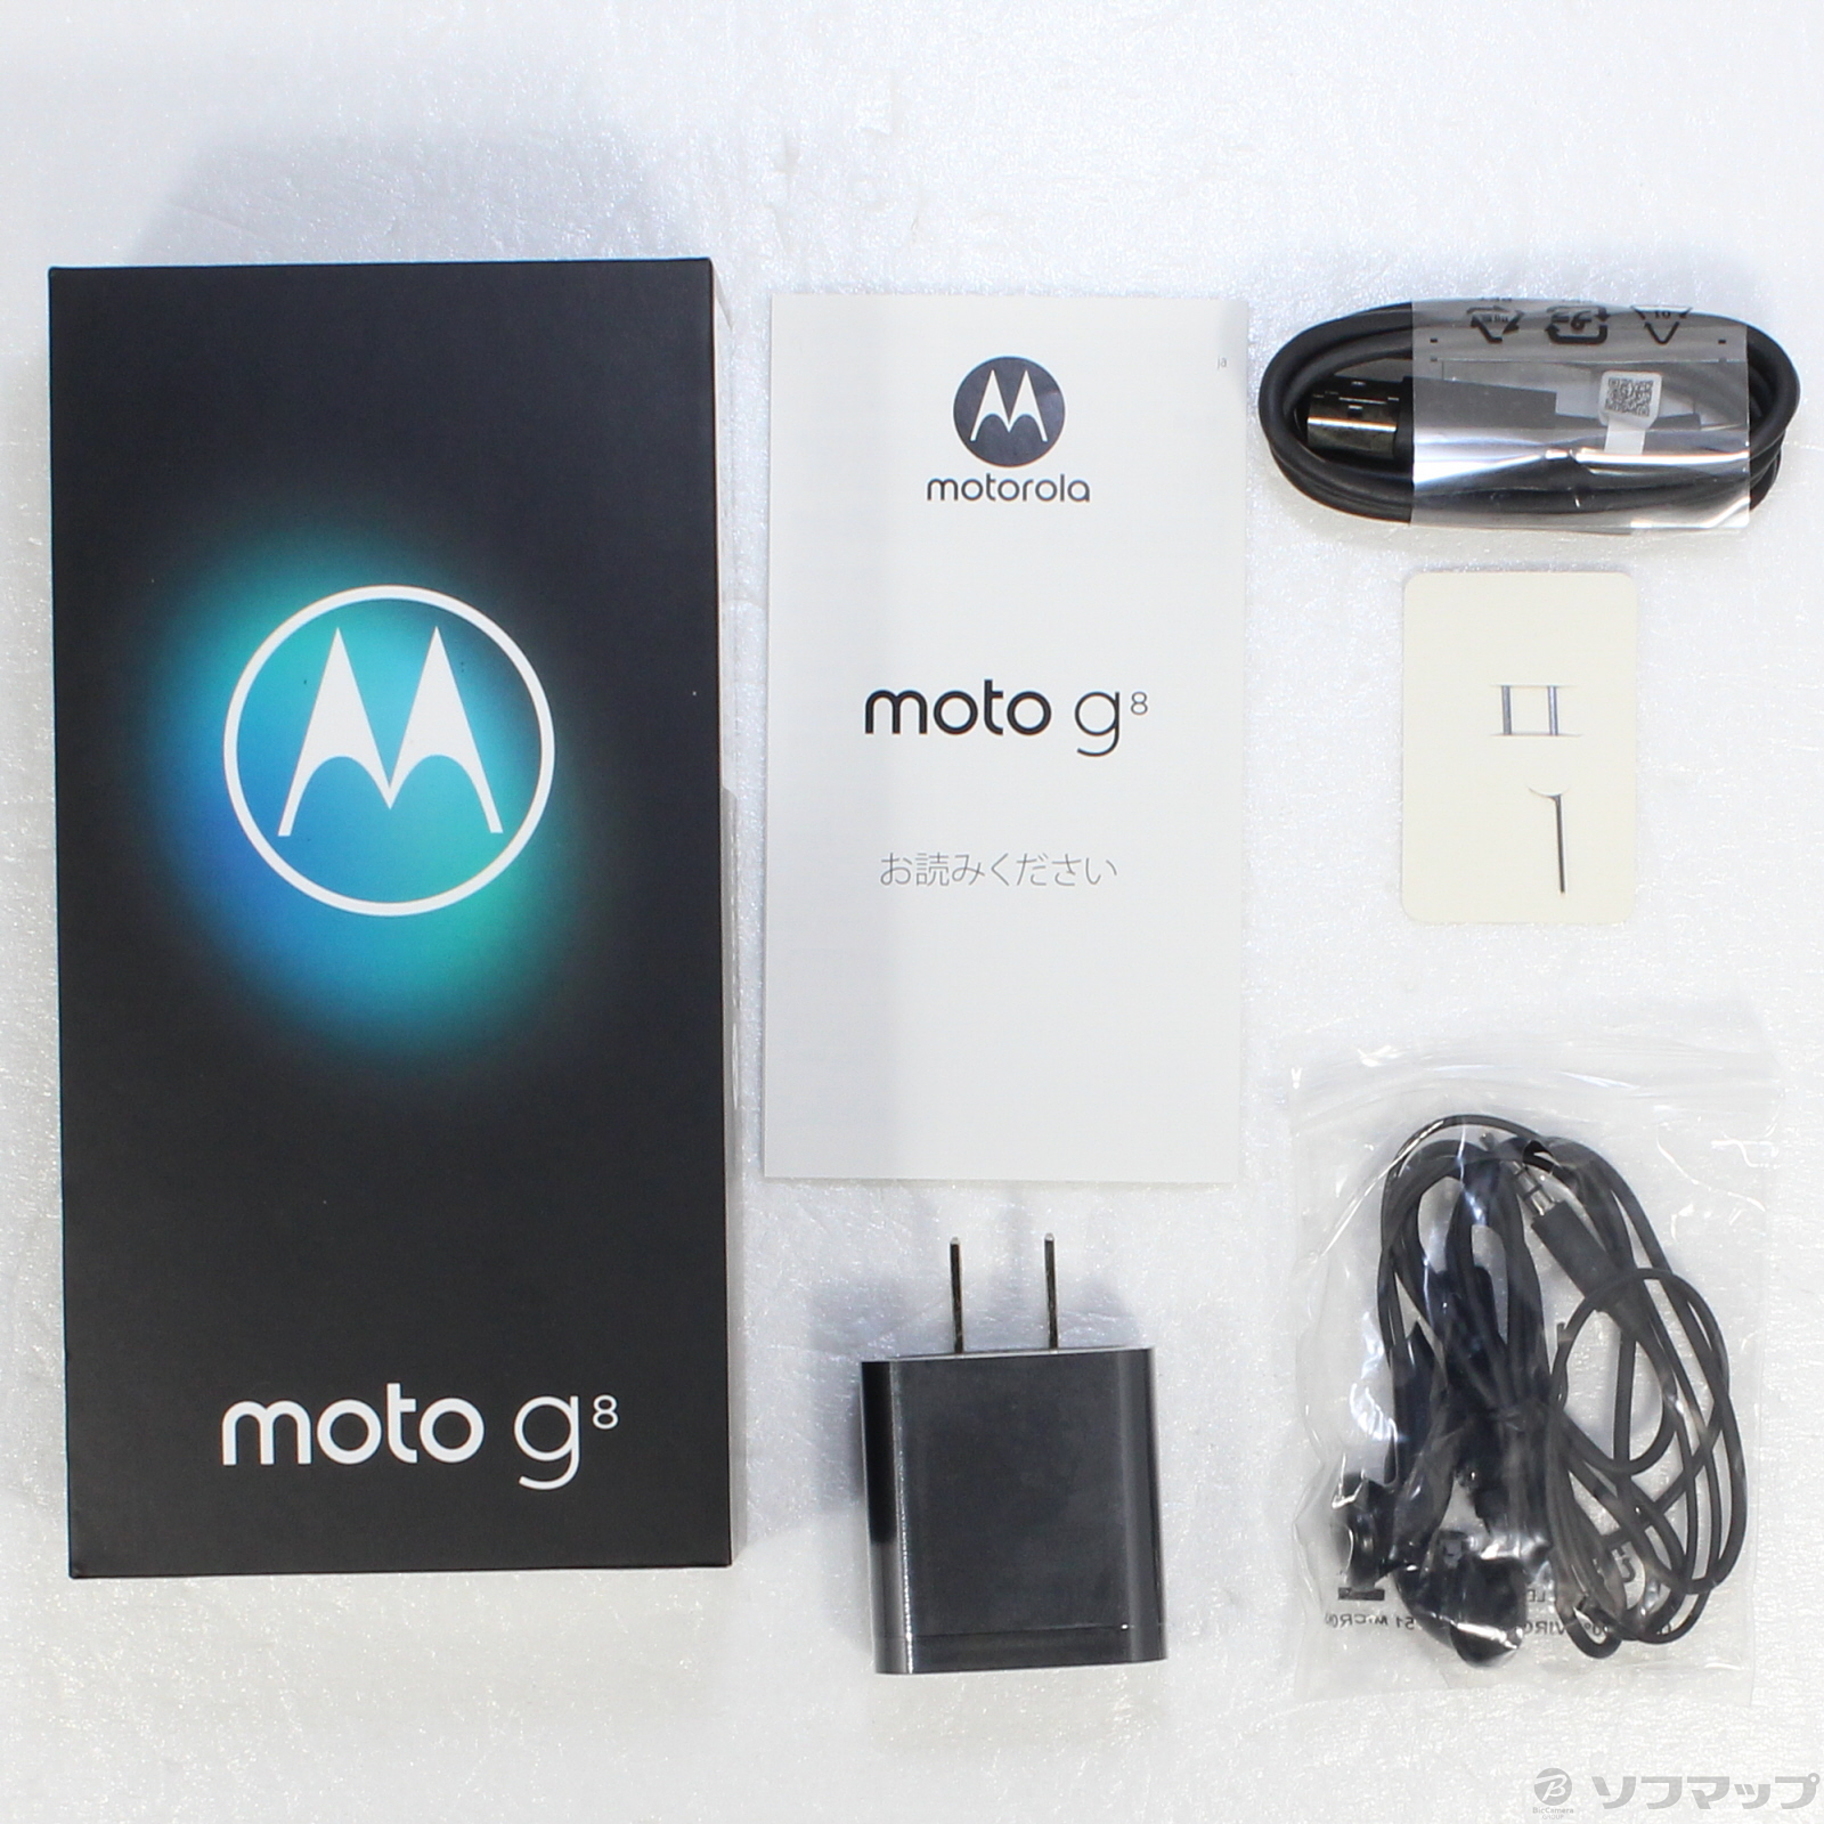 モトローラ Motorola moto g8 ホログラムホワイト